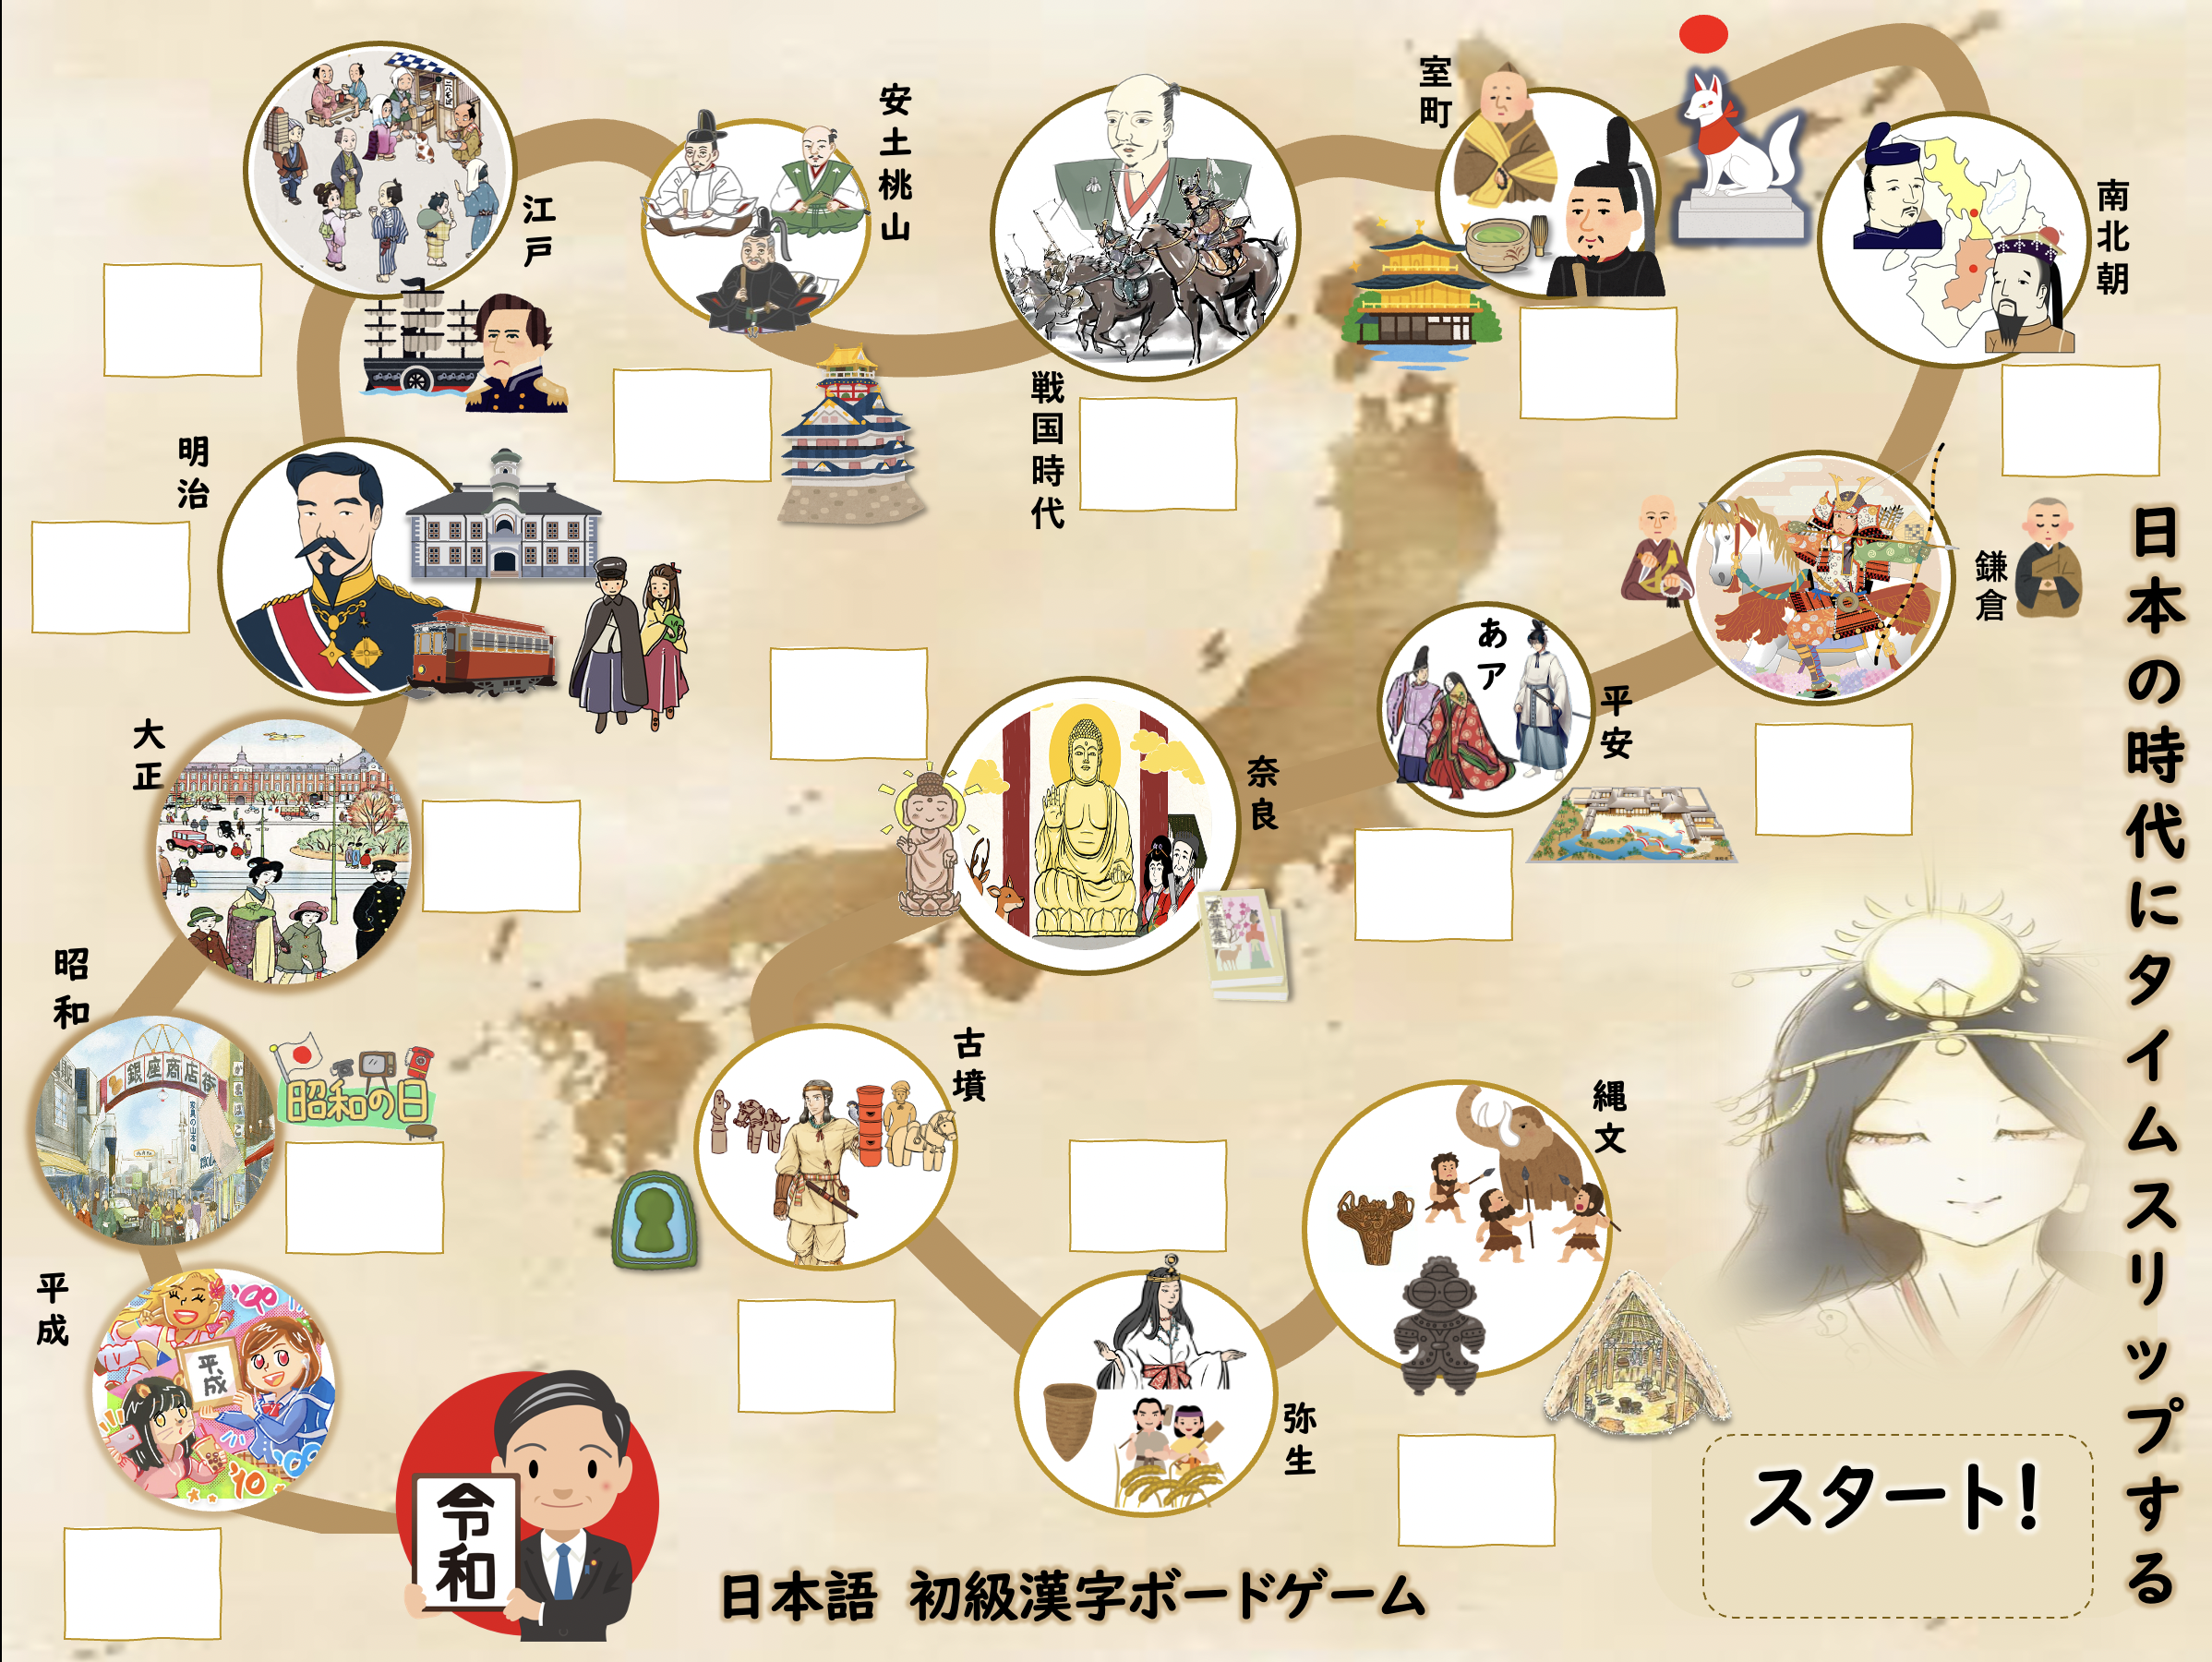 ภาพประกอบไอเดีย บอร์ดเกม อักษรคันจิเบื้องต้น“ย้อนเวลาหาญี่ปุ่น”  